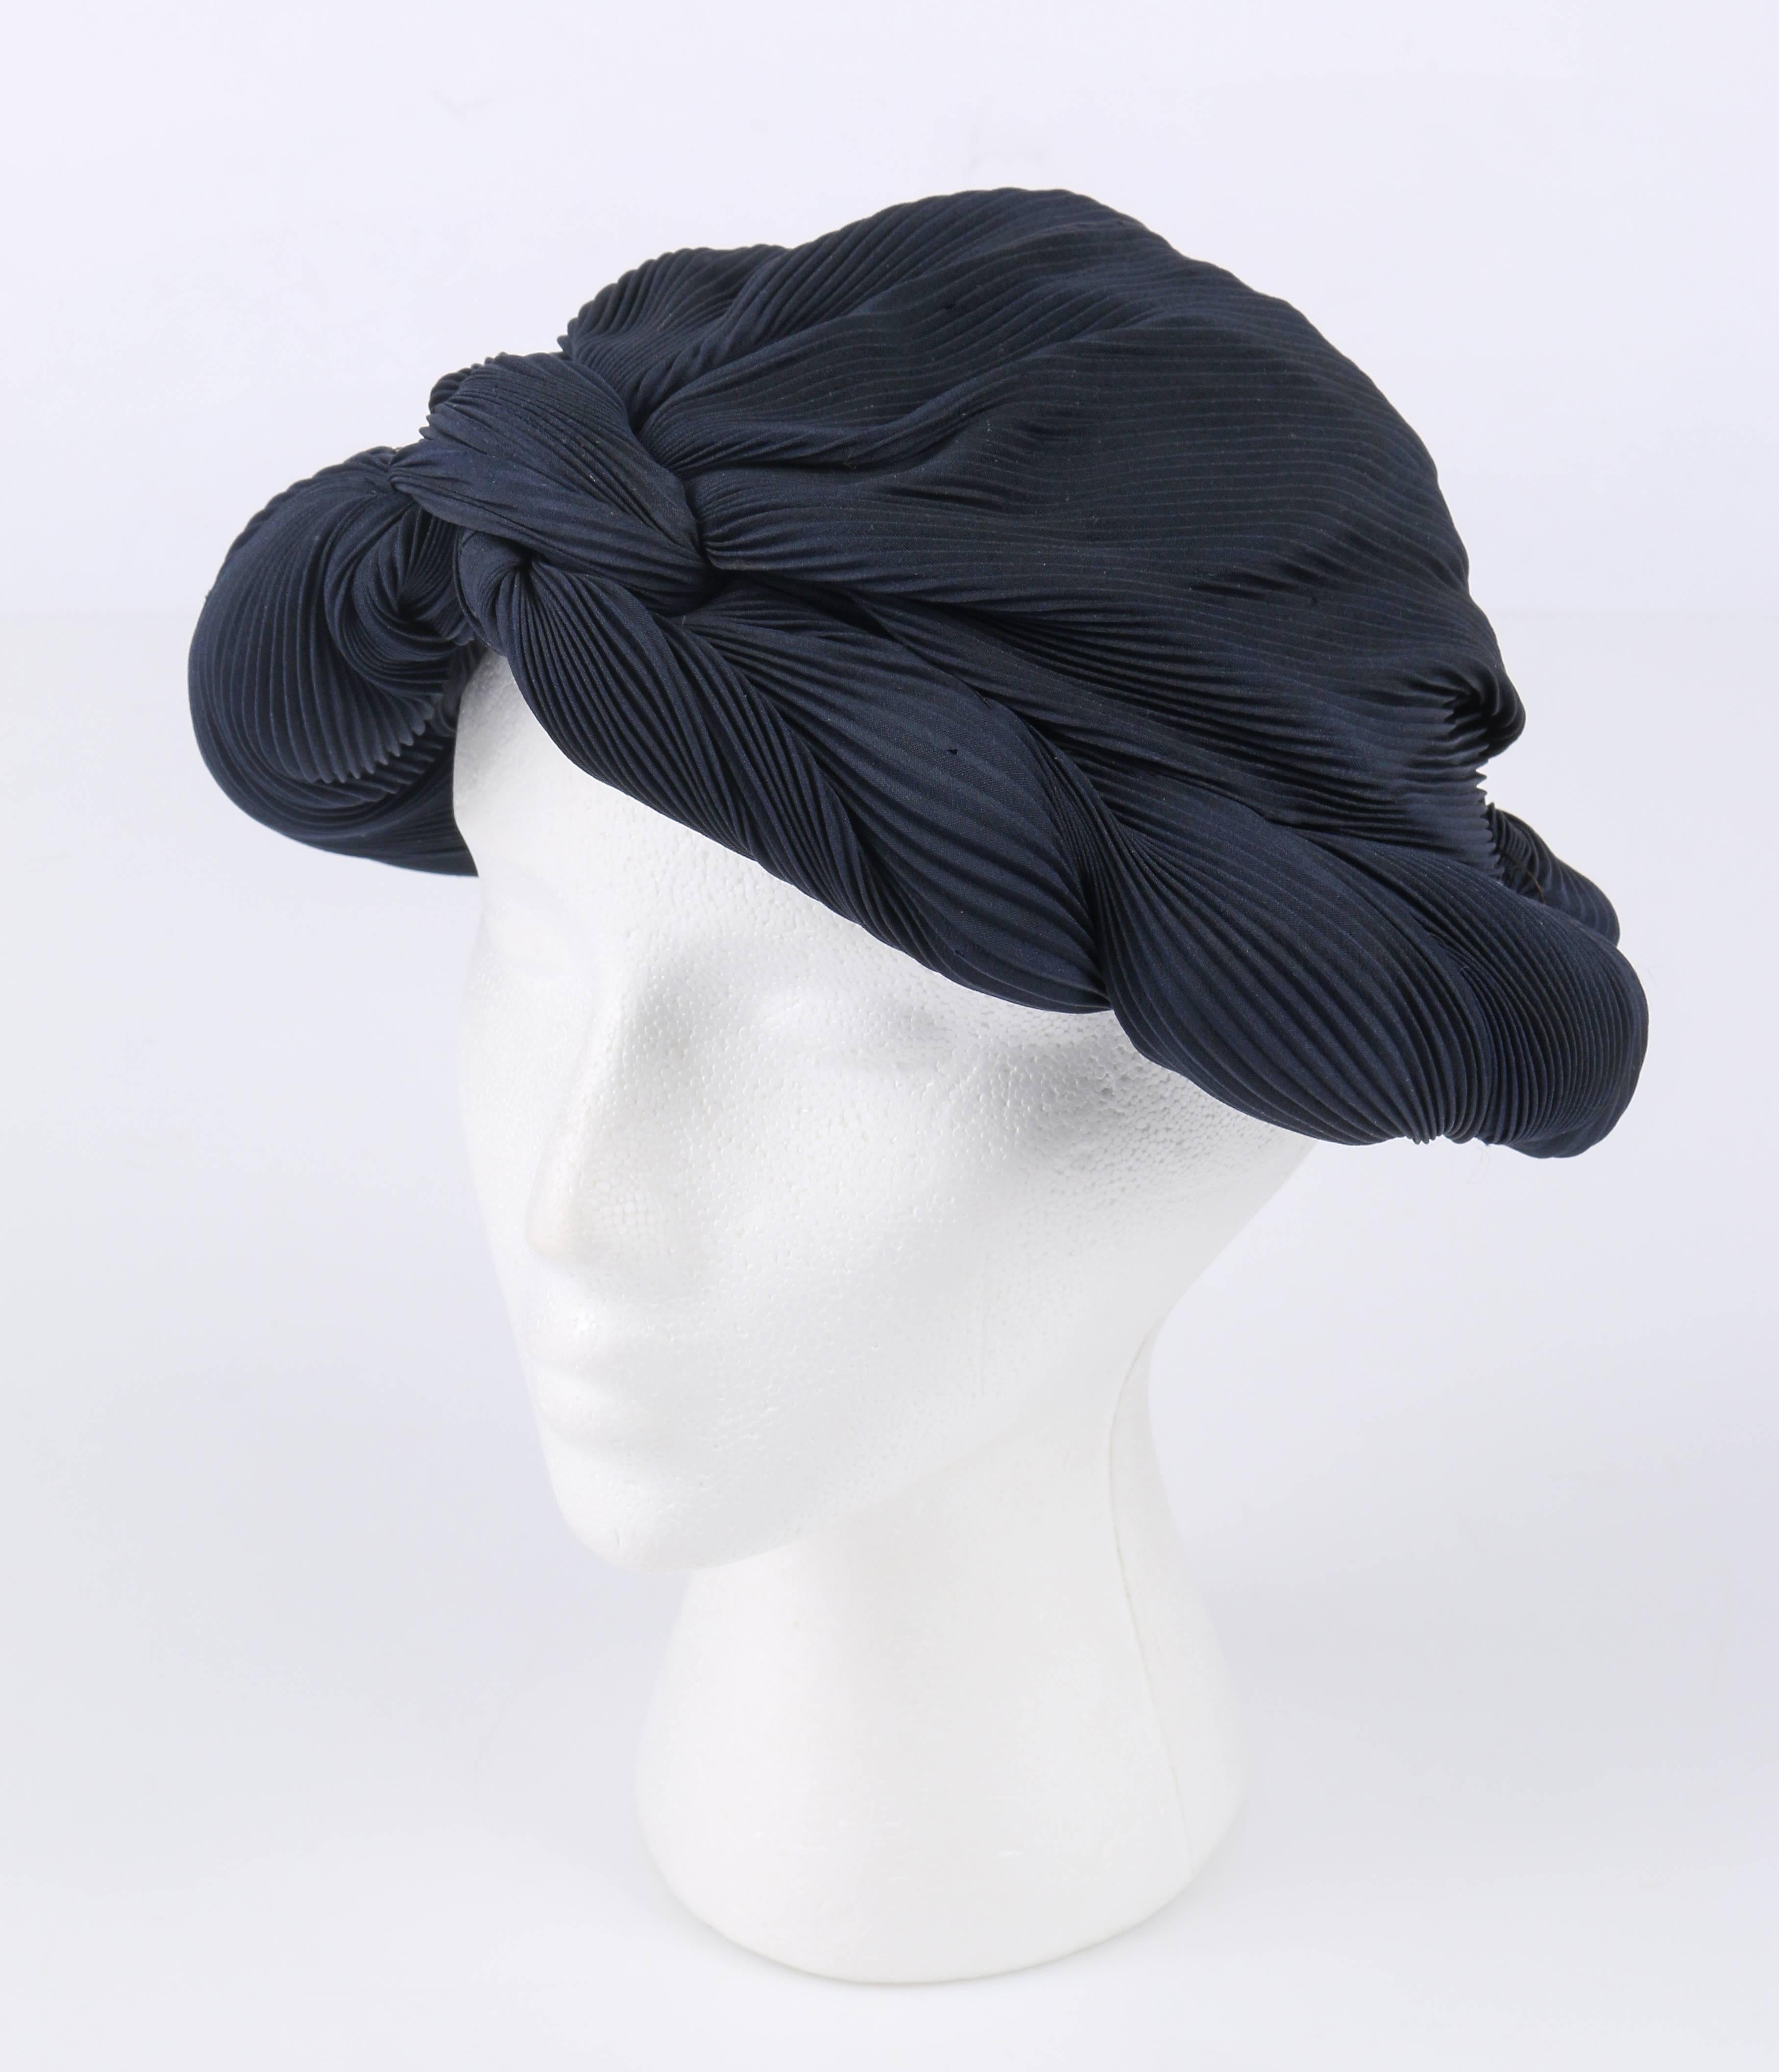 Vintage c.1930's Mitternacht marineblau / schwarz plissiert Seide Turban Stil Abendessen Hut. Körper aus plissierter Seide. Die Krempe mit gedrehten Falten wird an der Stirn geknotet. Mit schwarzer Seide gefüttert und mit Grosgrain-Band eingefasst.